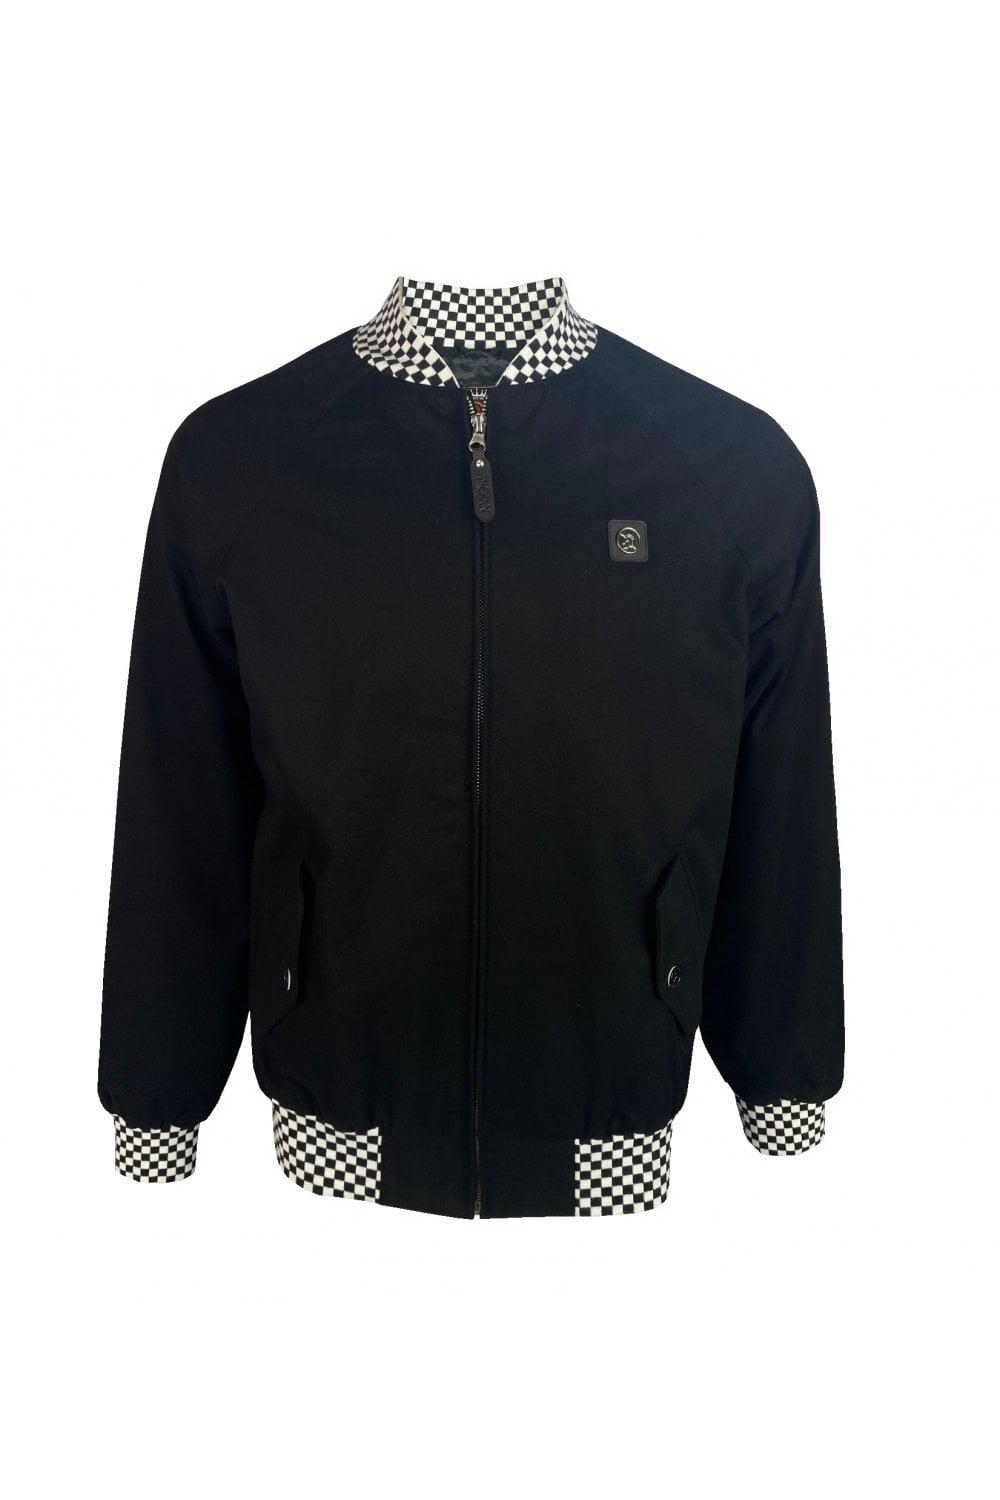 TROJAN Contract Rib Monkey Jacket TC/1000B Black Chequerboard - Raw Menswear 